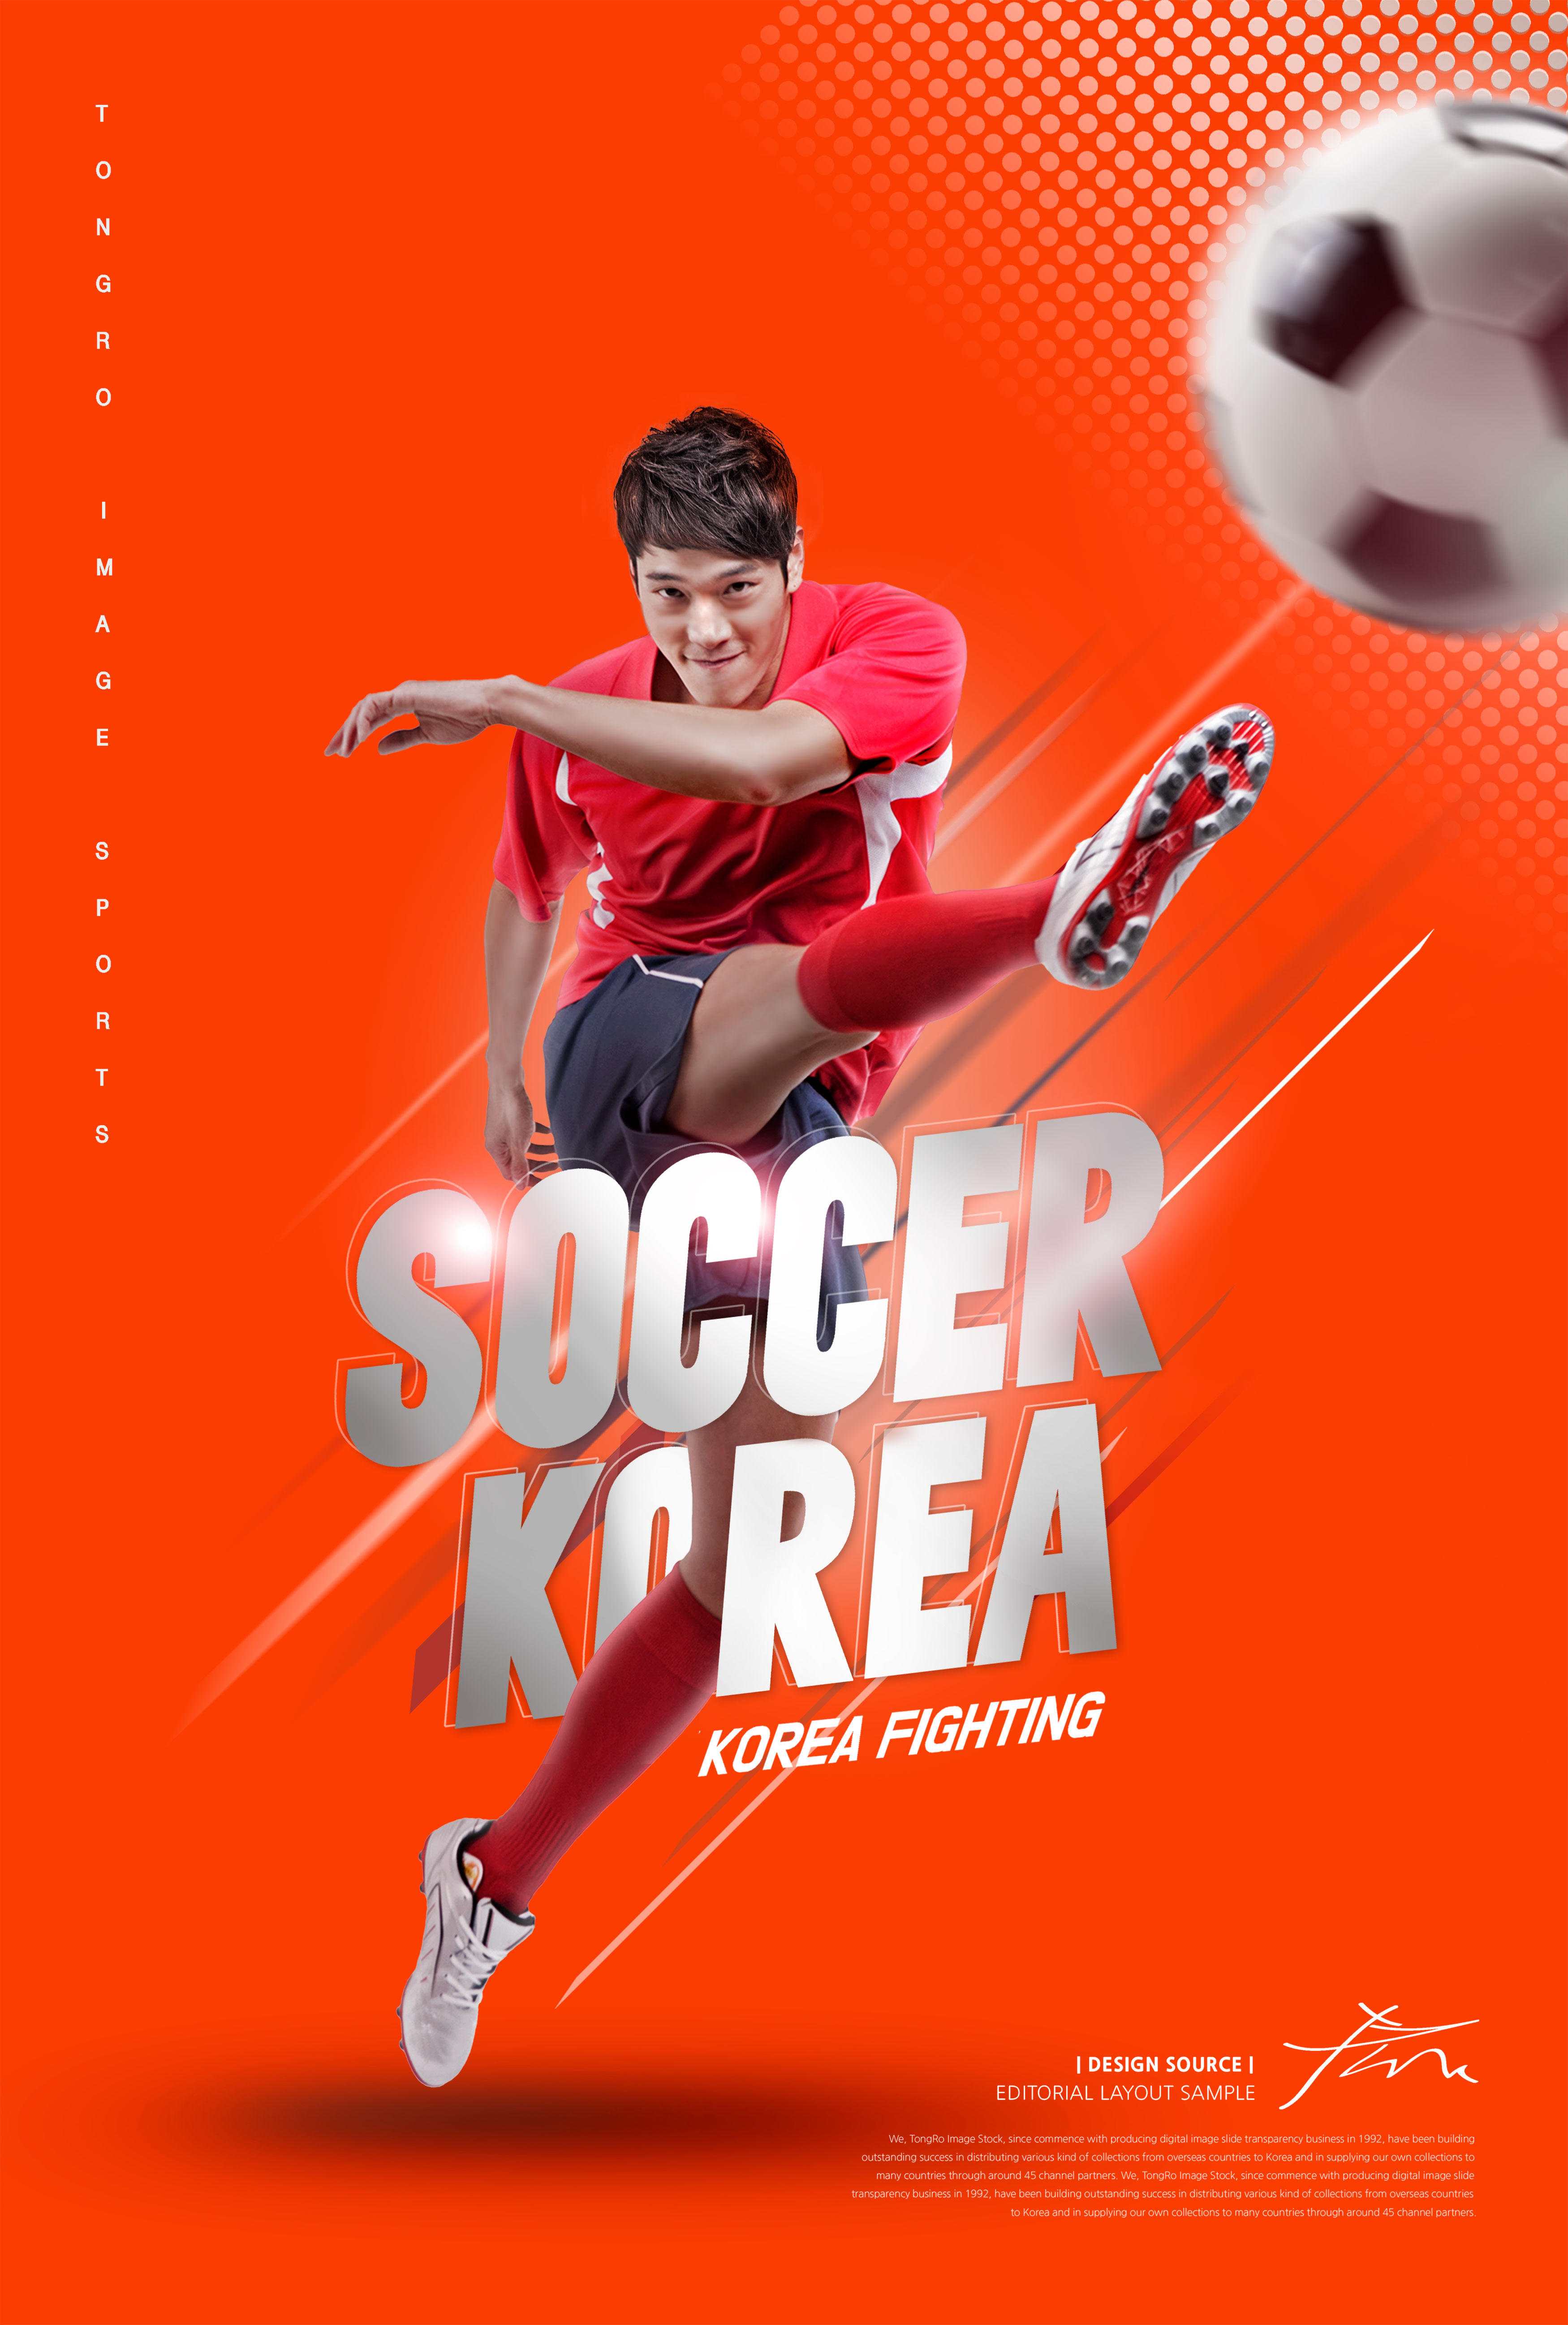 足球体育运动比赛海报PSD素材非凡图库精选psd模板插图